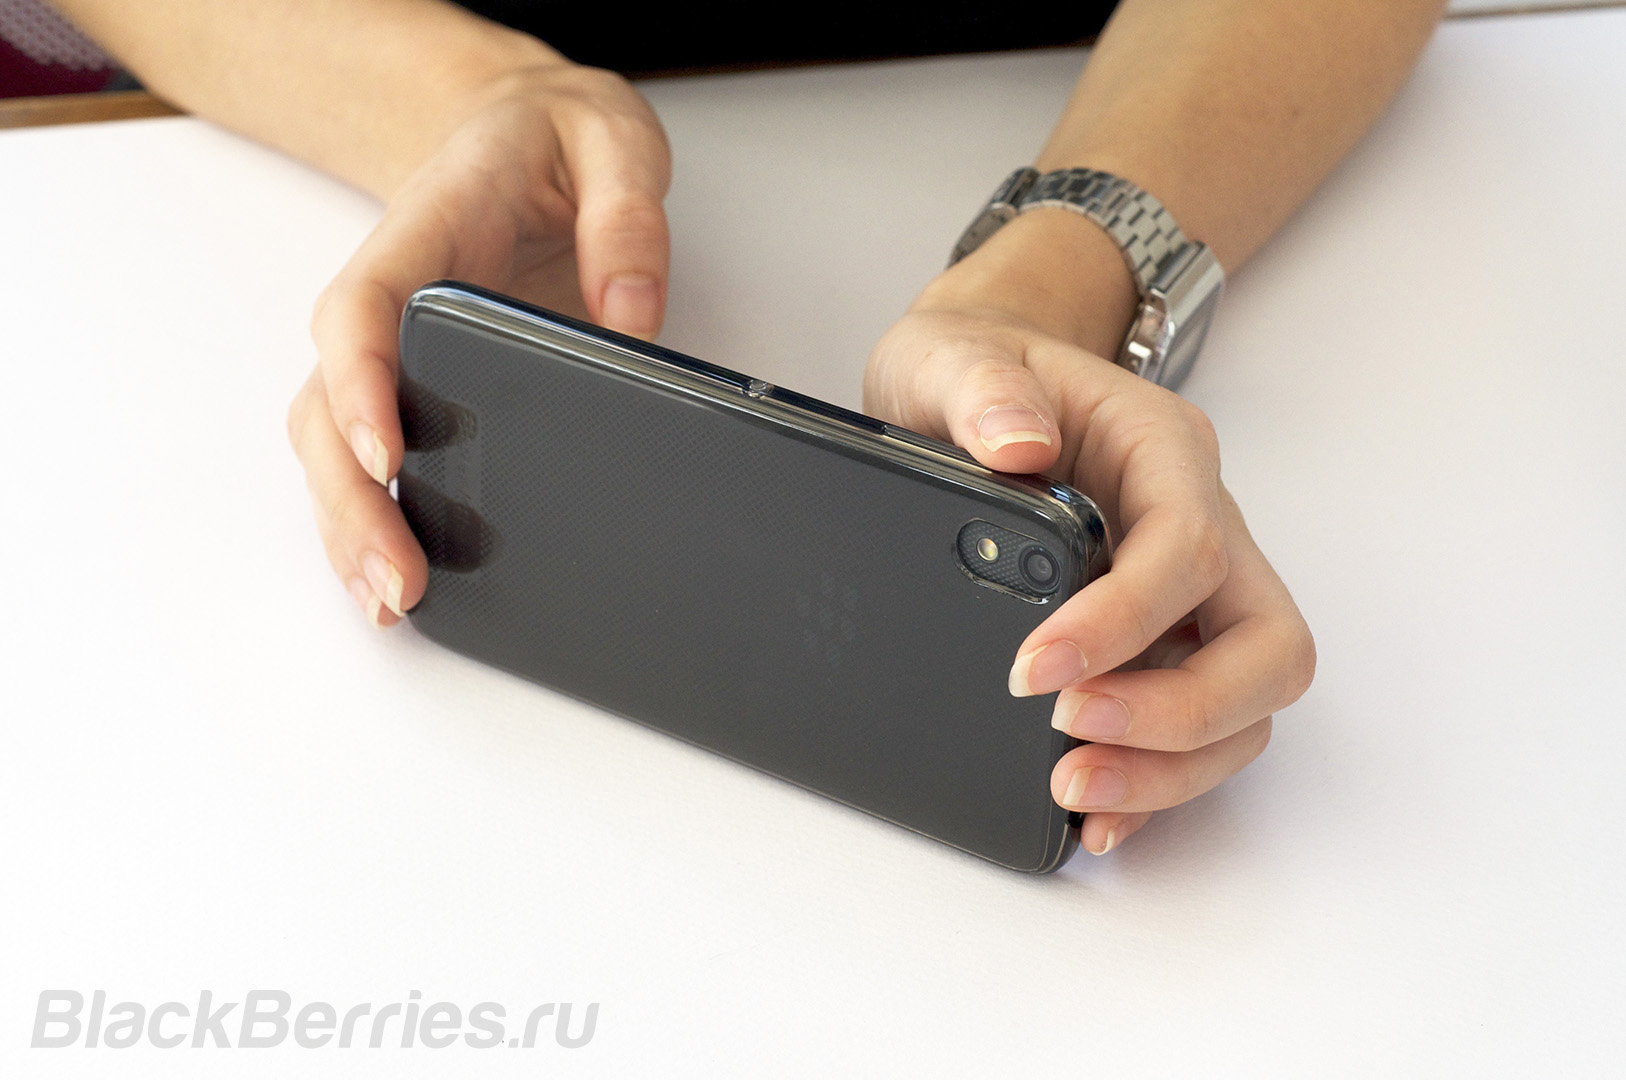 BlackBerry-DTEK50-Cases-10